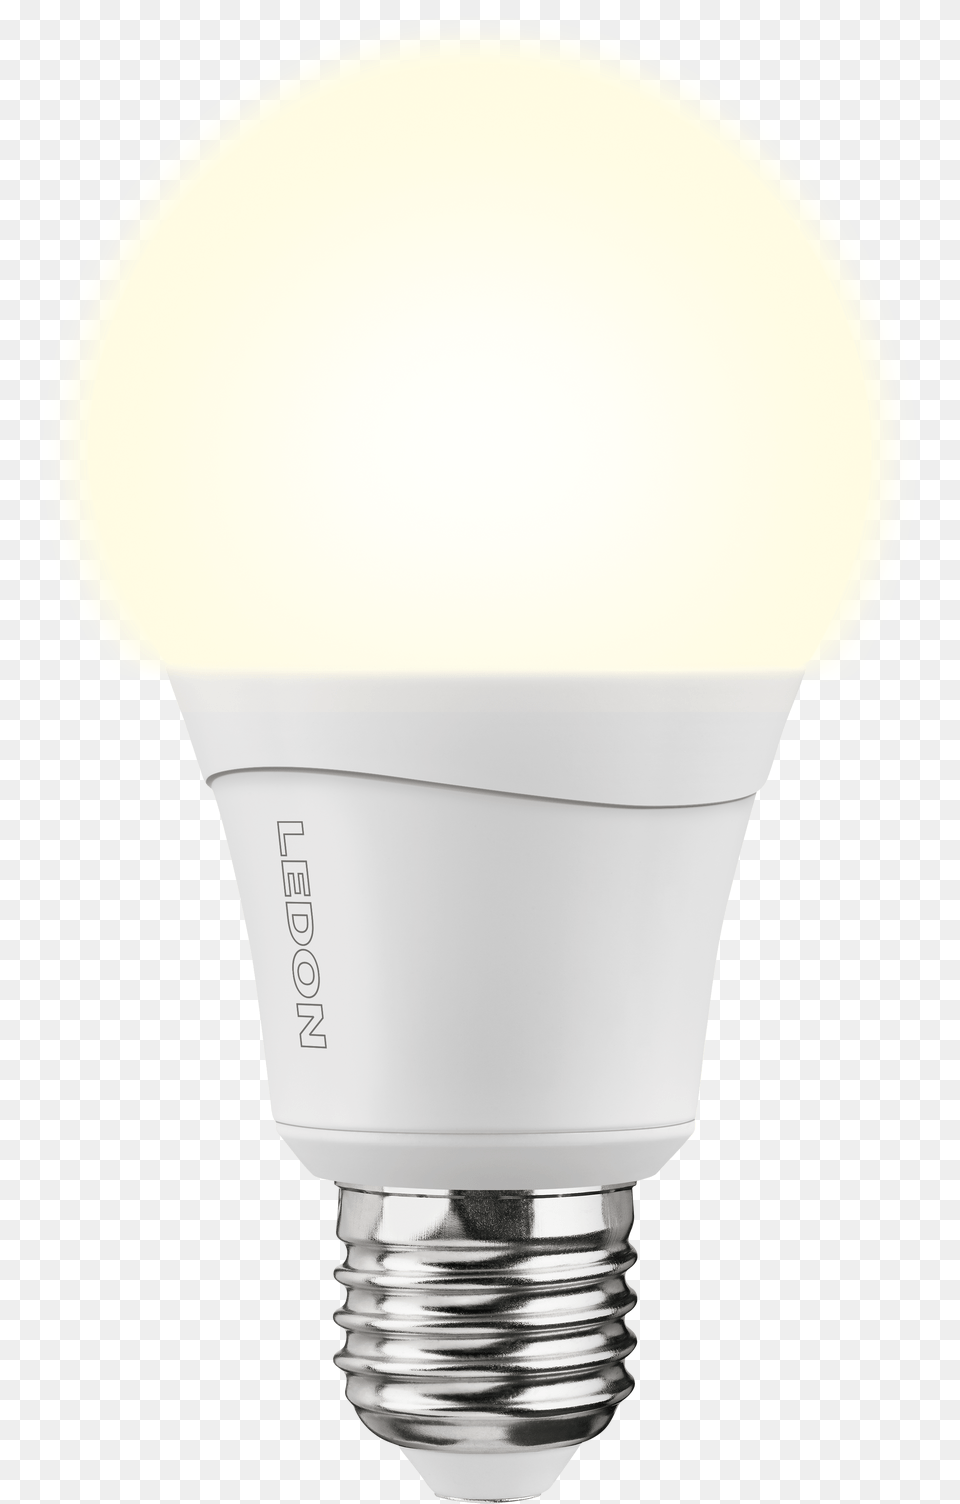 Led Lamp A66 12 5w E27 Ledon Ledon Led Lamps Led Lamp, Light, Electronics, Lightbulb Free Png